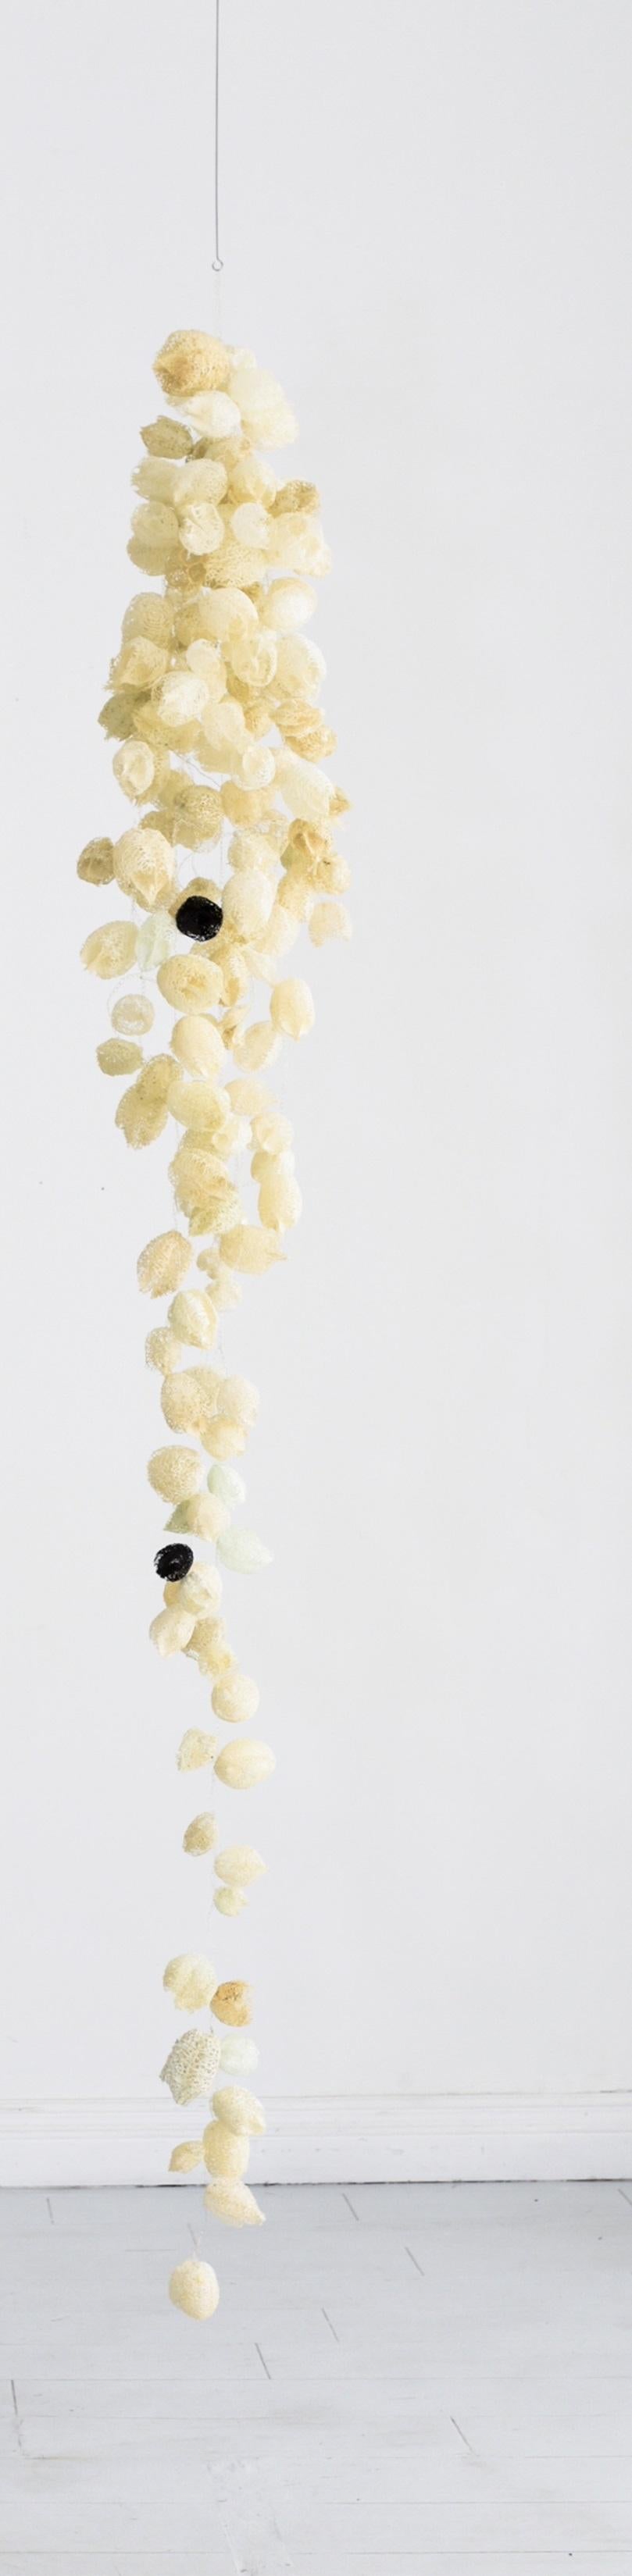 Sculpture suspendue en perles noires de Karolina Maszkiewicz
Unique en son genre.
Dimensions : D 33 x L 33 x H 200,7 cm. 
Matériaux : Fil métallique et gousses de concombre sauvage.

Karolina Maszkiewicz est une artiste américaine d'origine